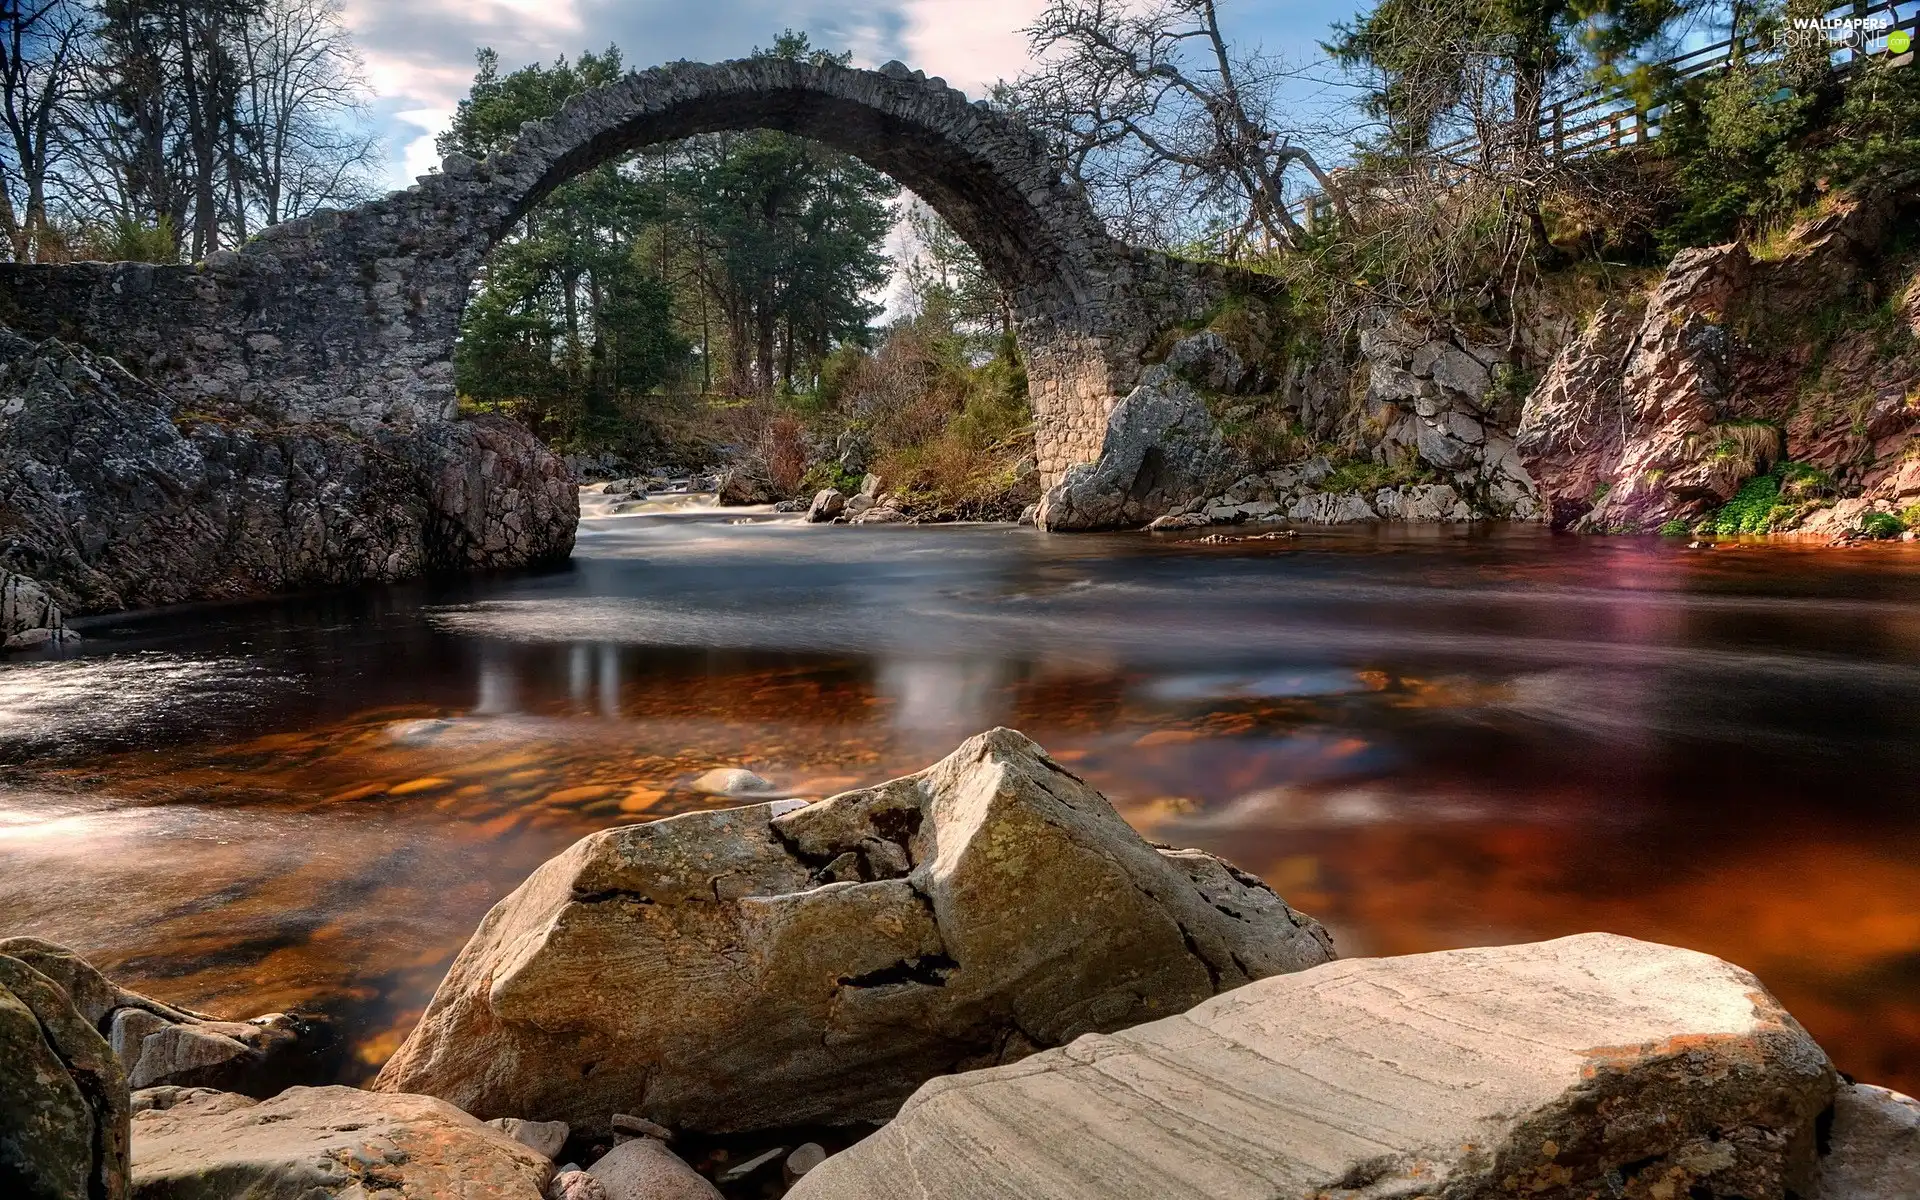 River, stone, bridge, Stones